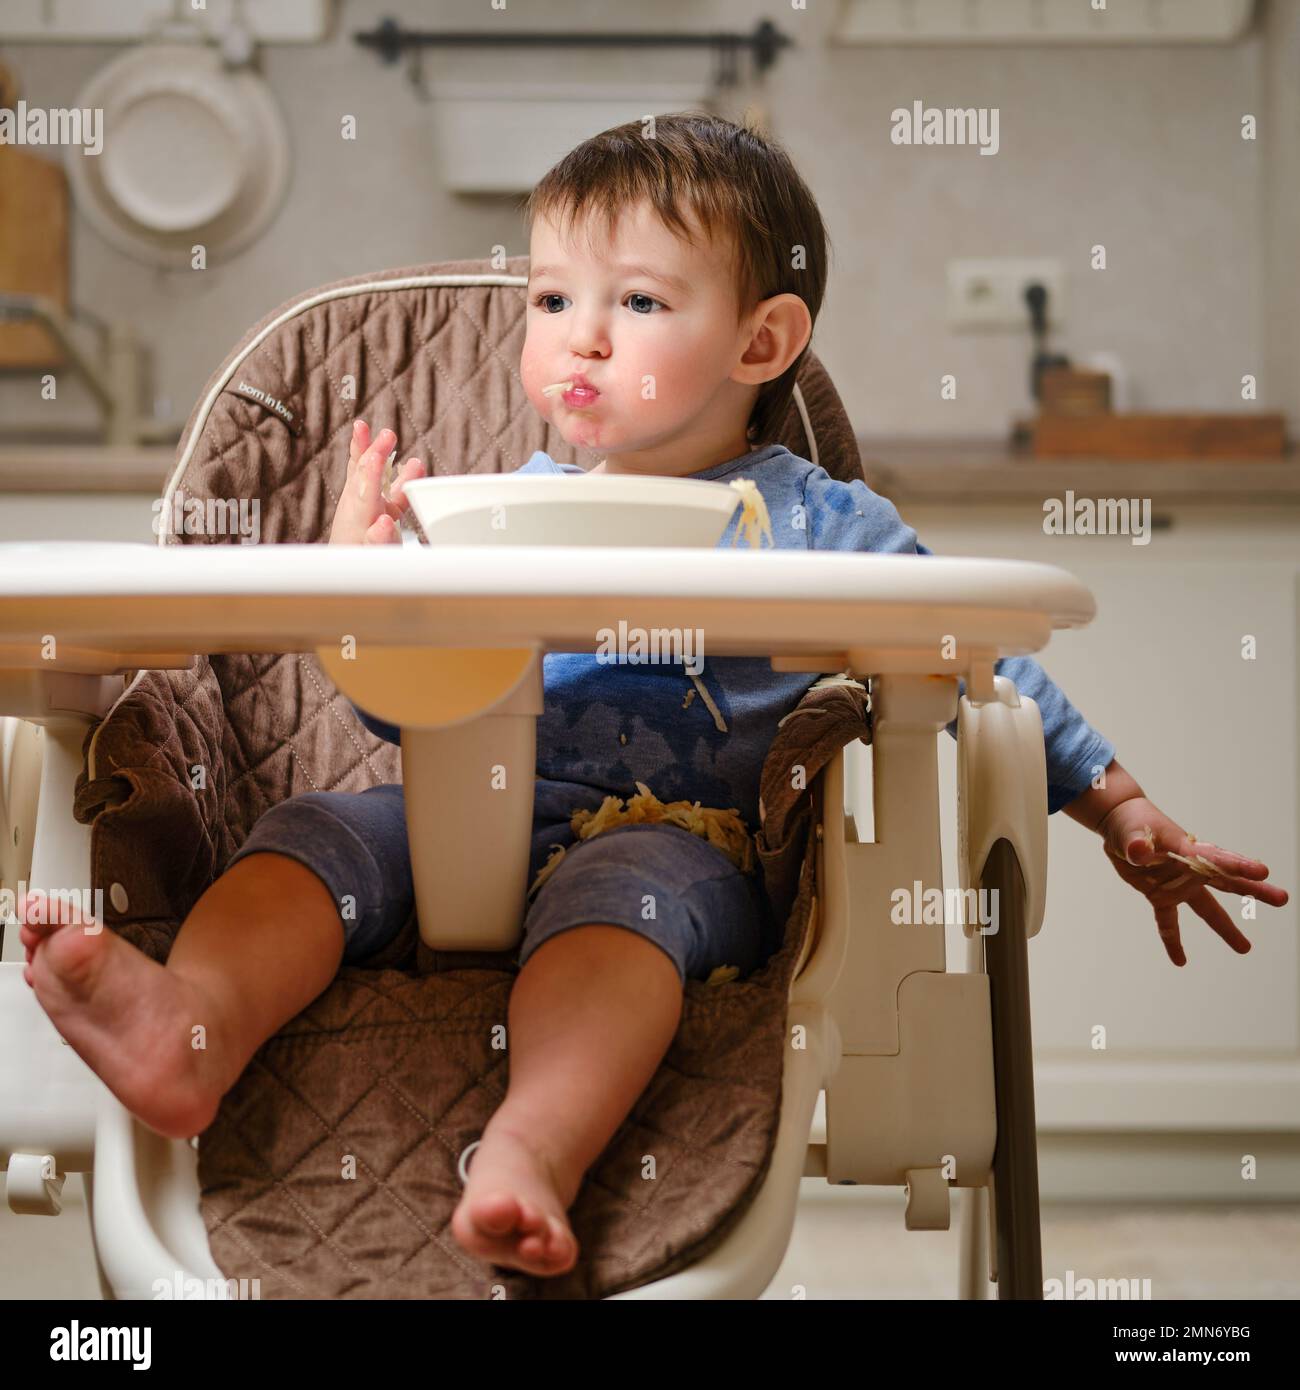 Un enfant drôle mange une pomme râpée avec sa bouche pleine tout en étant assis sur une chaise de cuisine. Bébé garçon affamé, il a de la nourriture dans sa bouche, de l'humour. Enfant âgé Banque D'Images